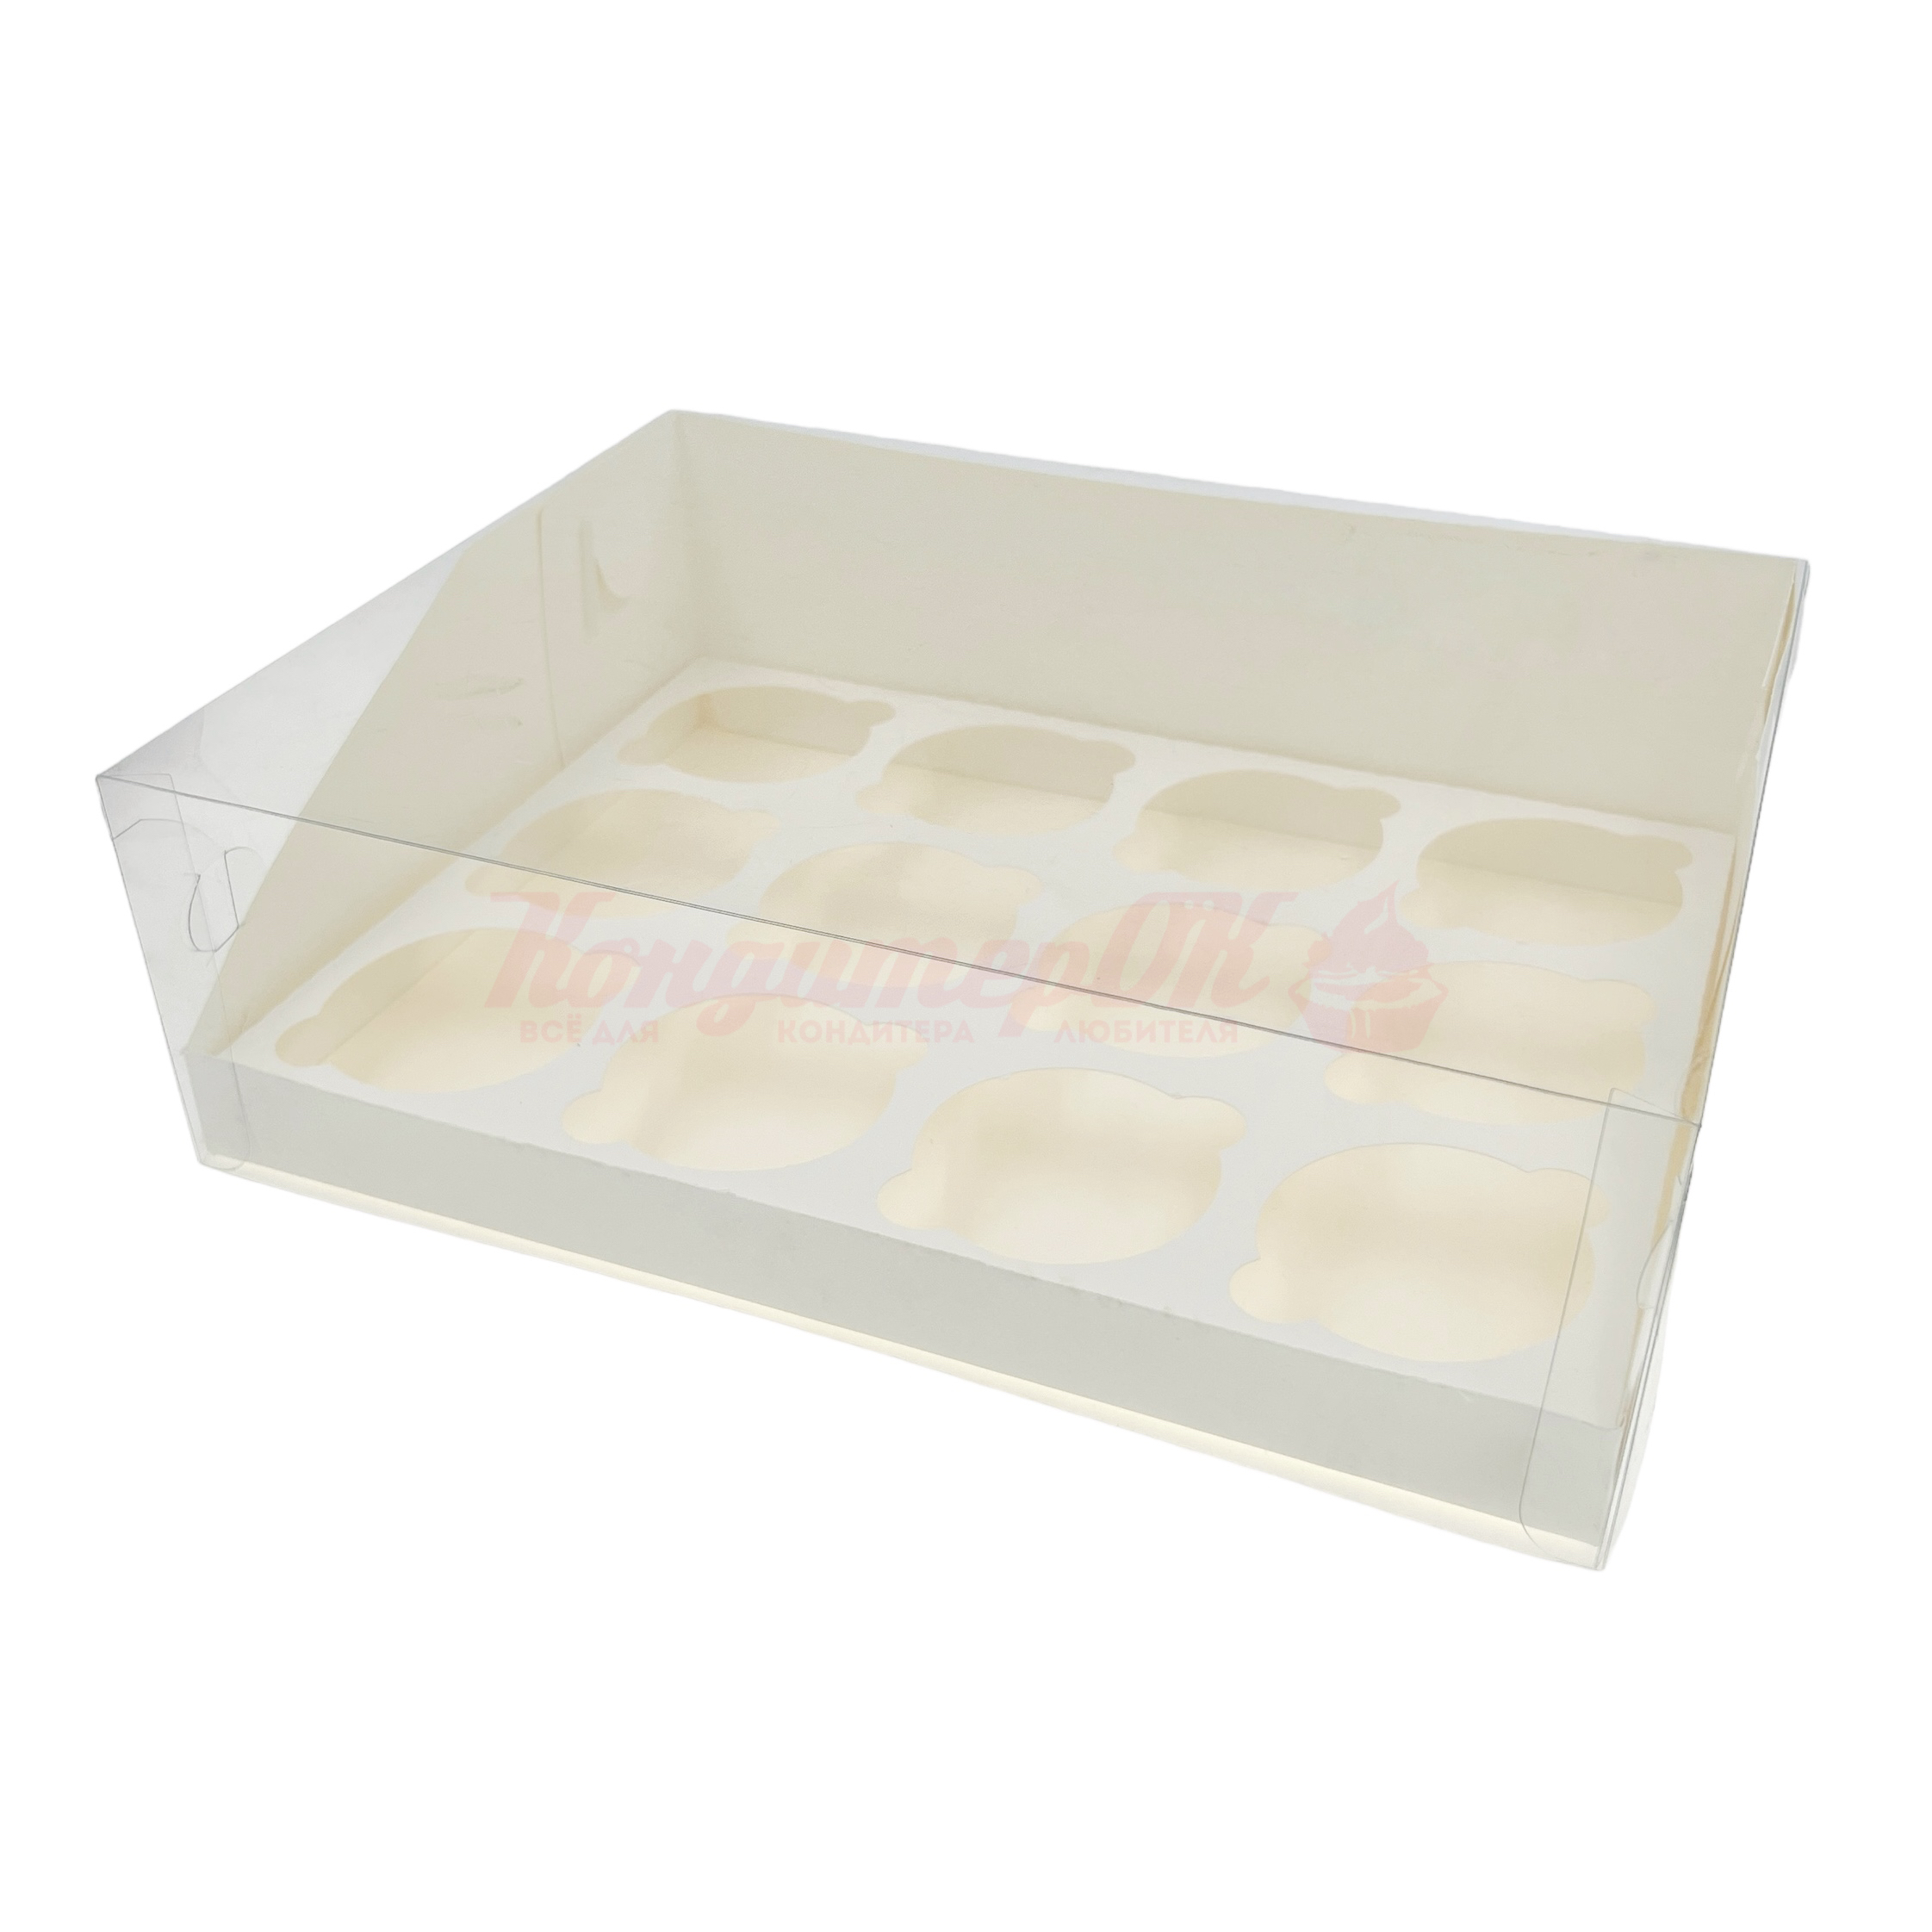 Коробка для 12 капкейков белая со скош. окном 310*235*100 мм